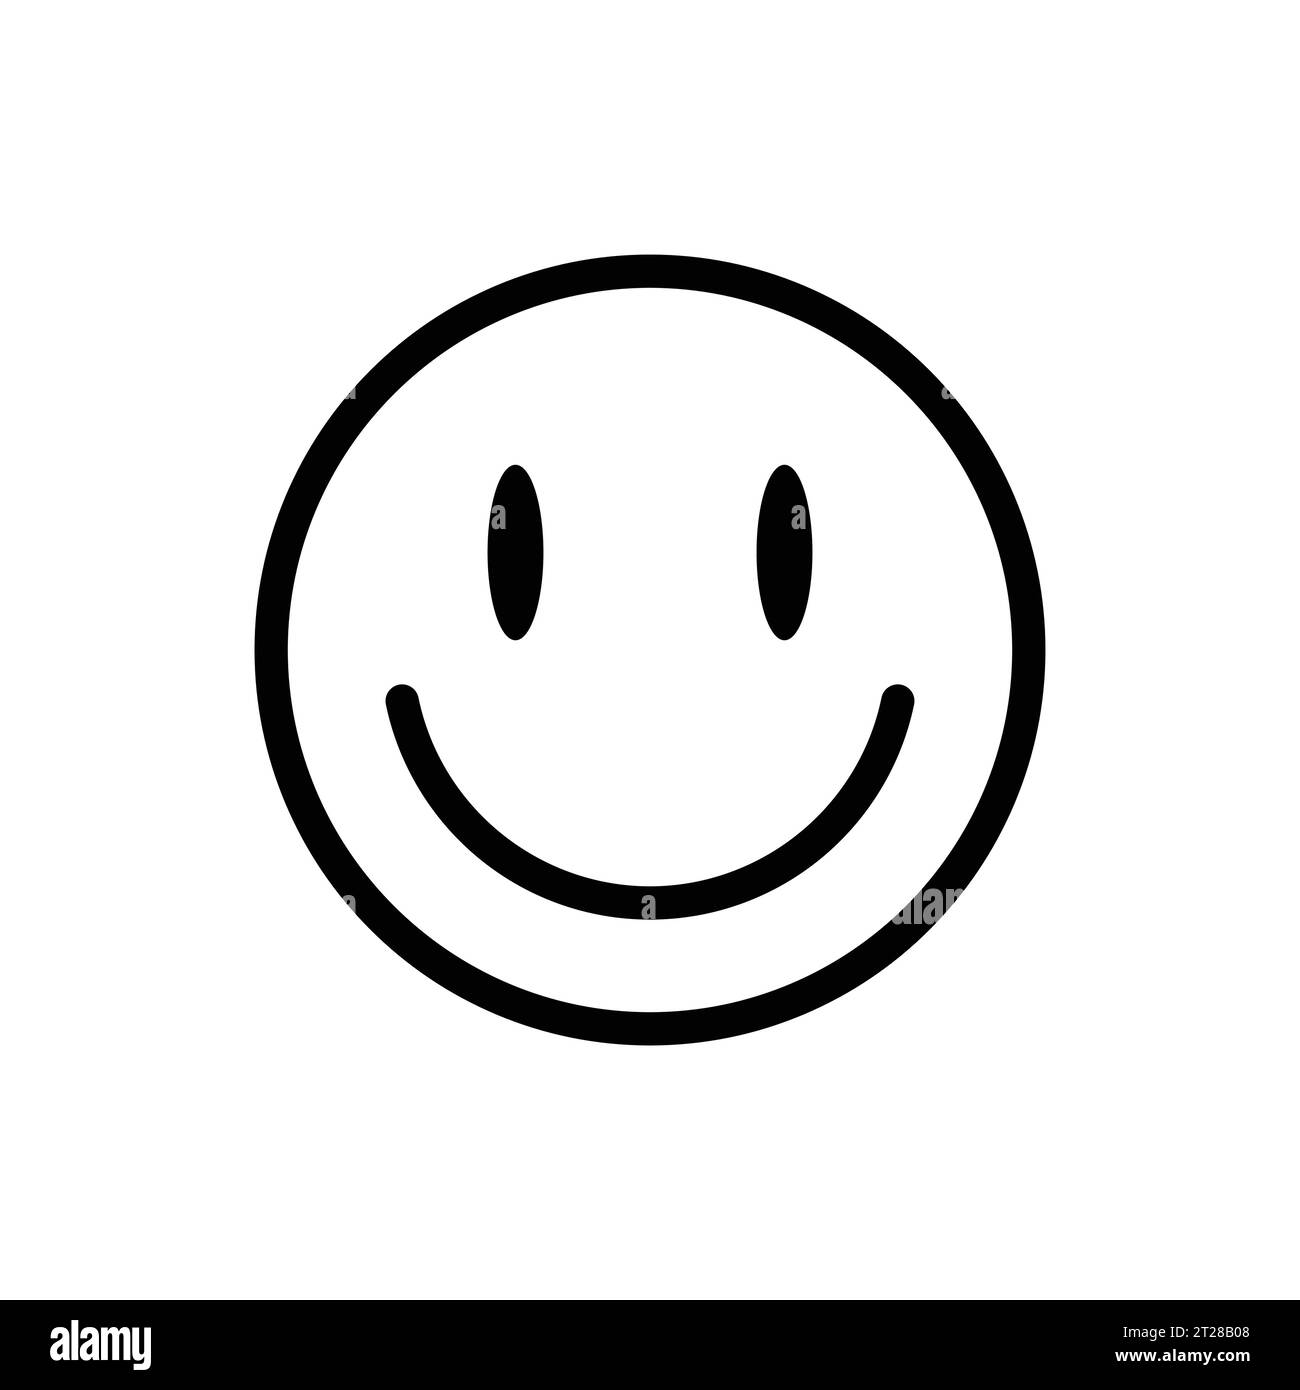 Design World Smile Day, Happy Face, icone Smiley Face Vector Illustrazione Vettoriale